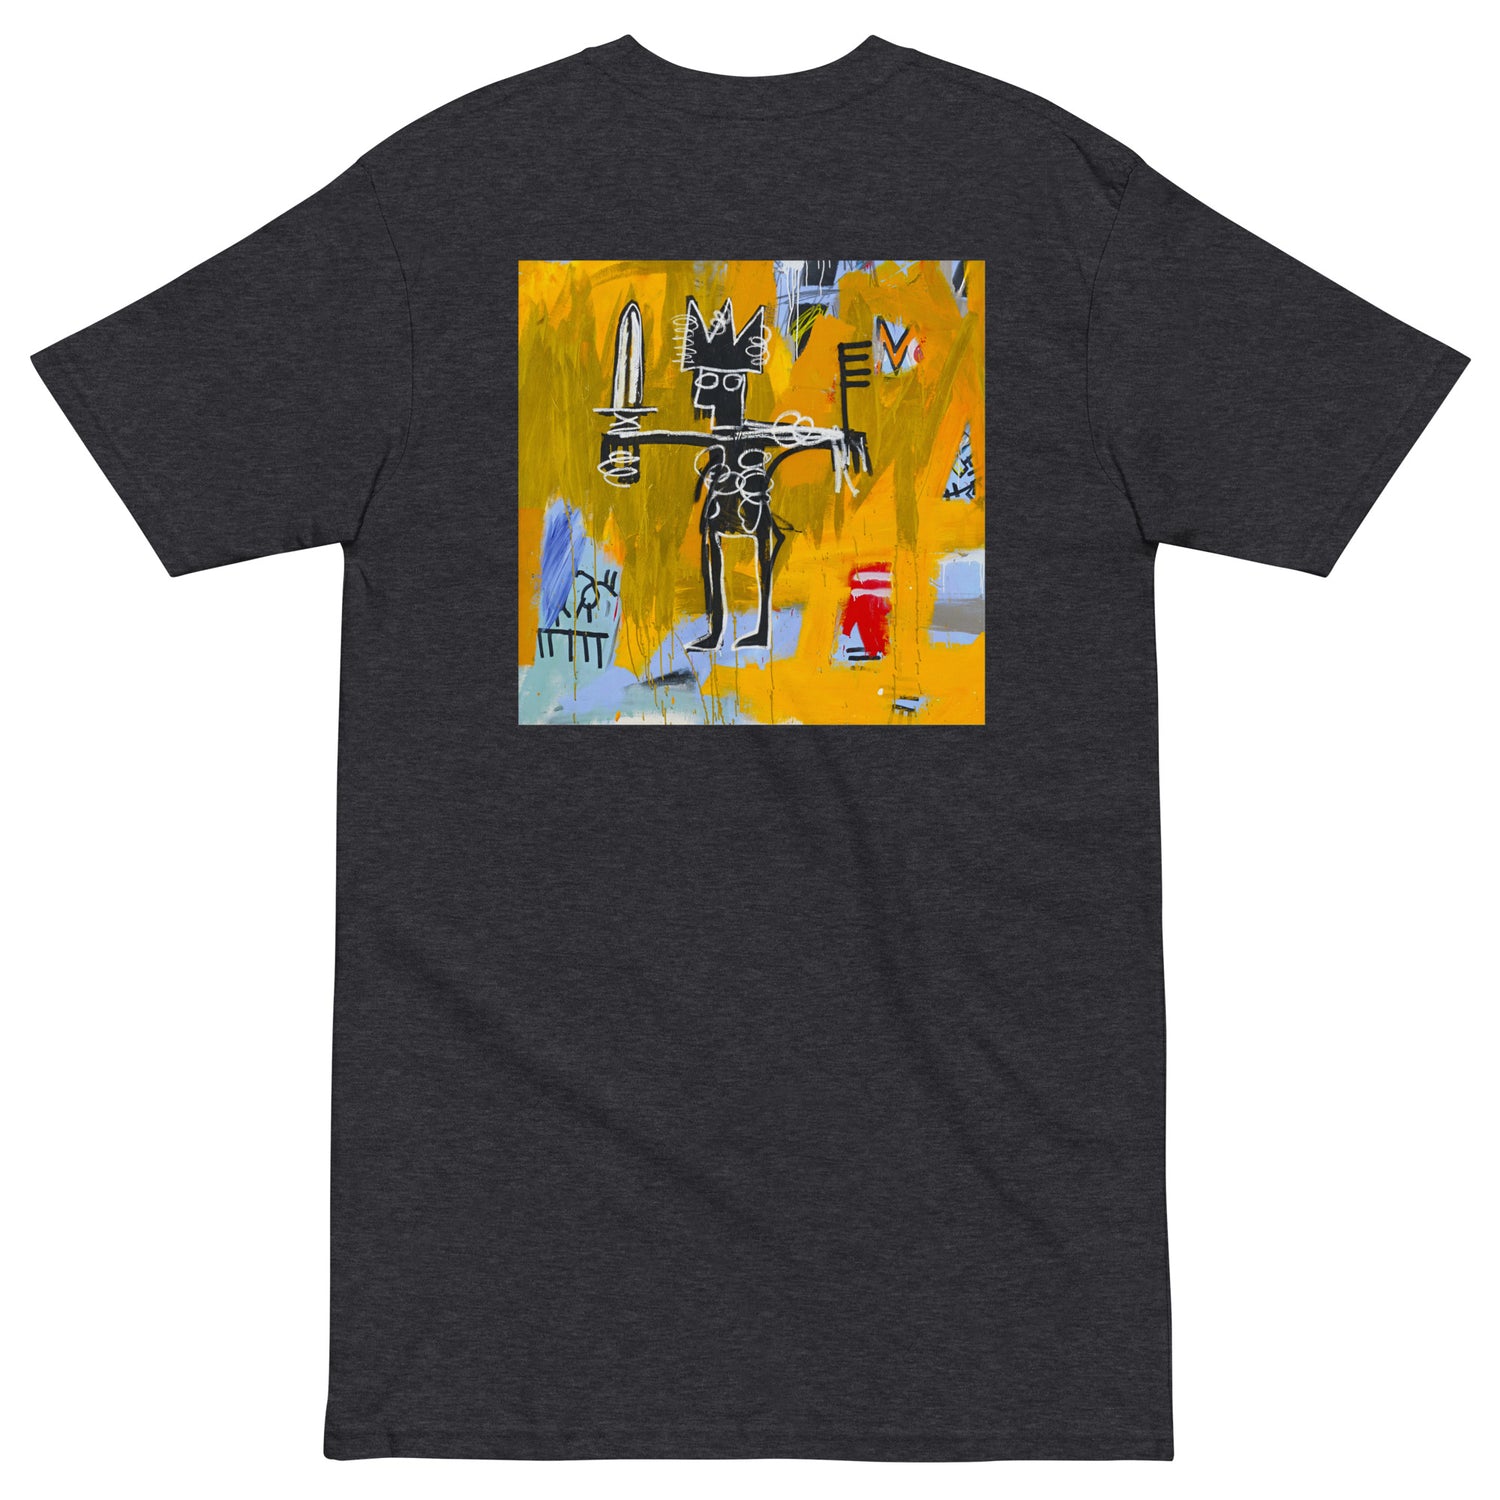 Jean-Michel Basquiat "Julius Caesar on Gold" Artwork Printed Premium Streetwear Crewneck T-shirt Charcoal Grey